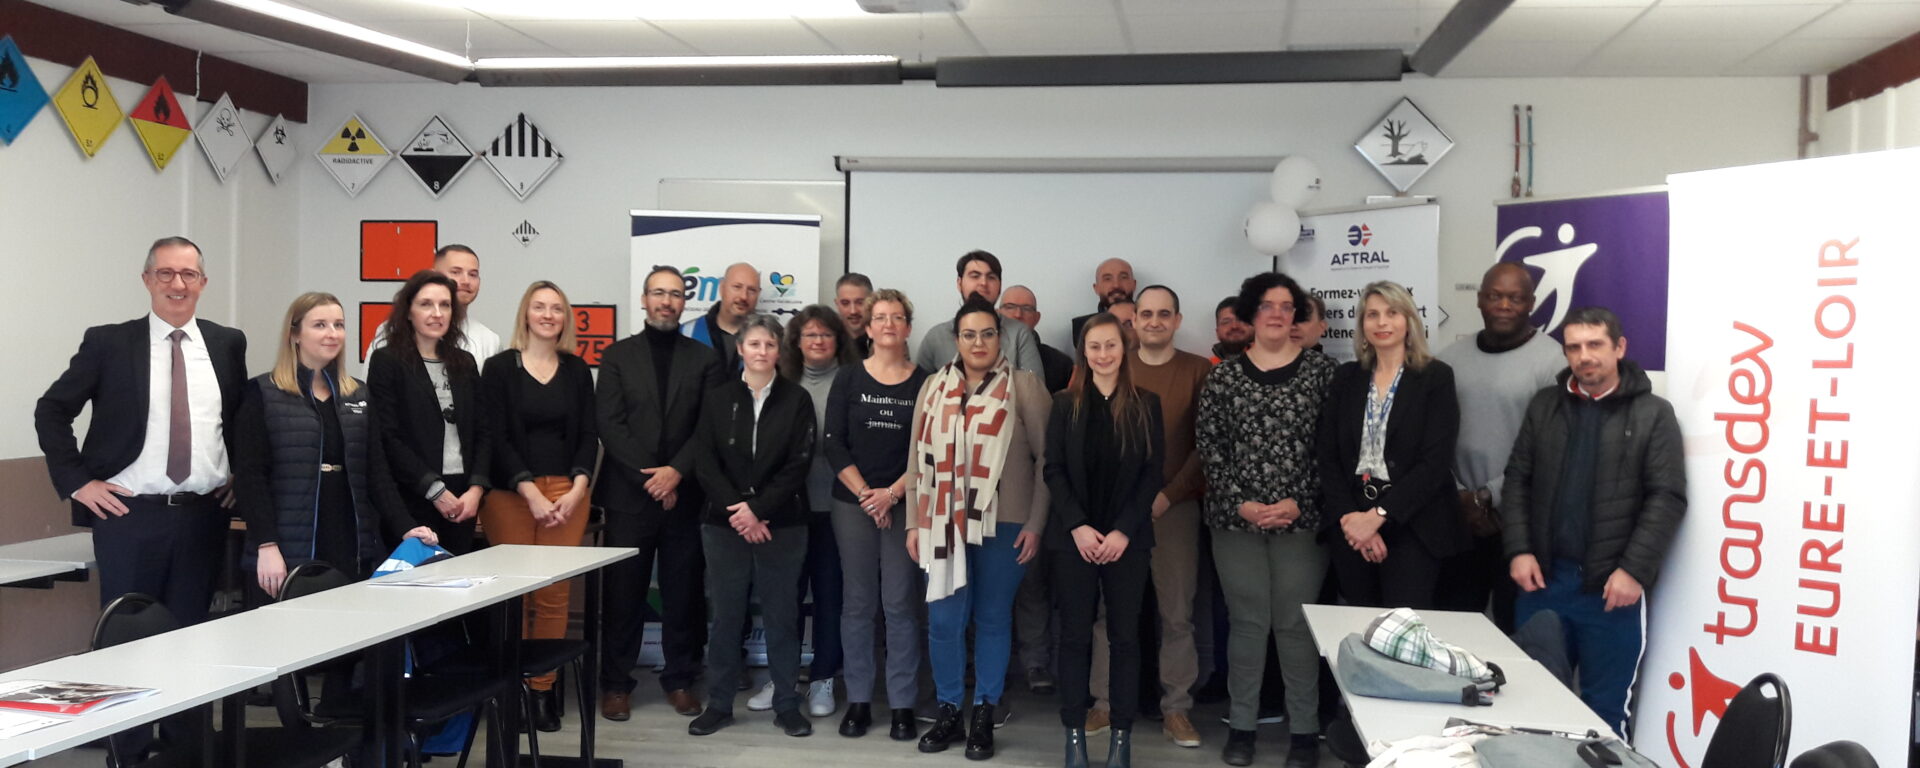 Photo de groupe des participants au lancement d’un CFA Academie by Transdev chez Transdev Eure-et-Loir